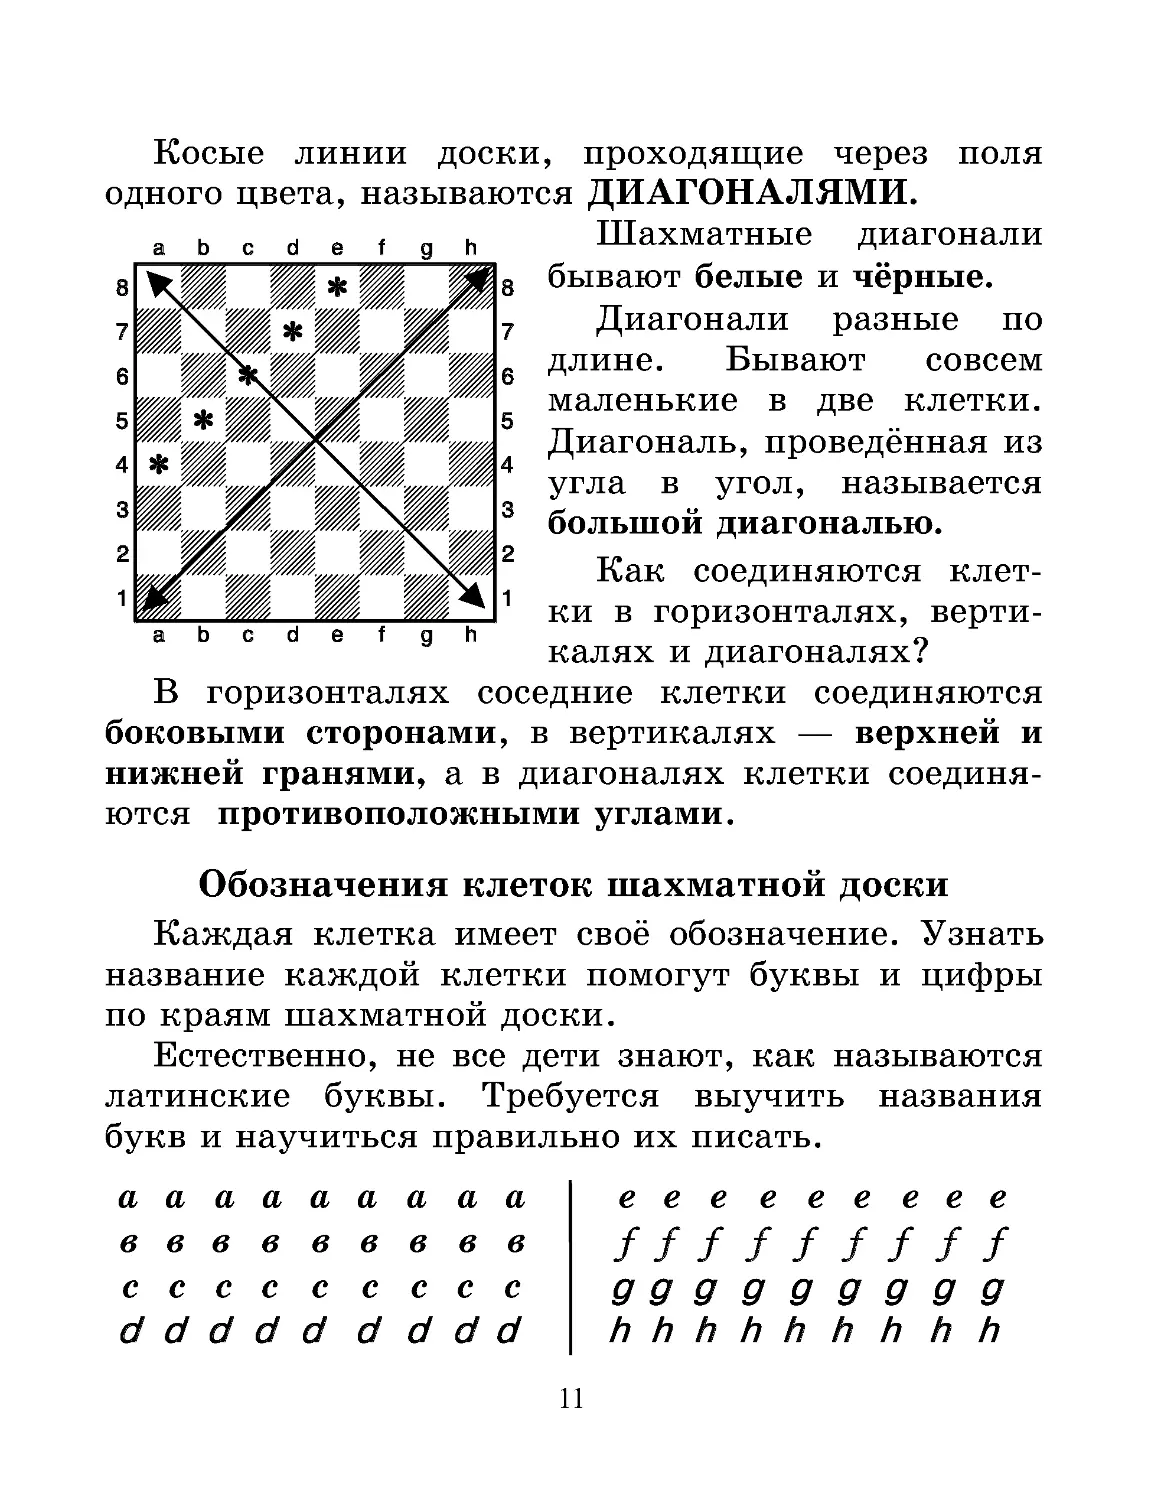 Урок 2. Шахматная доска